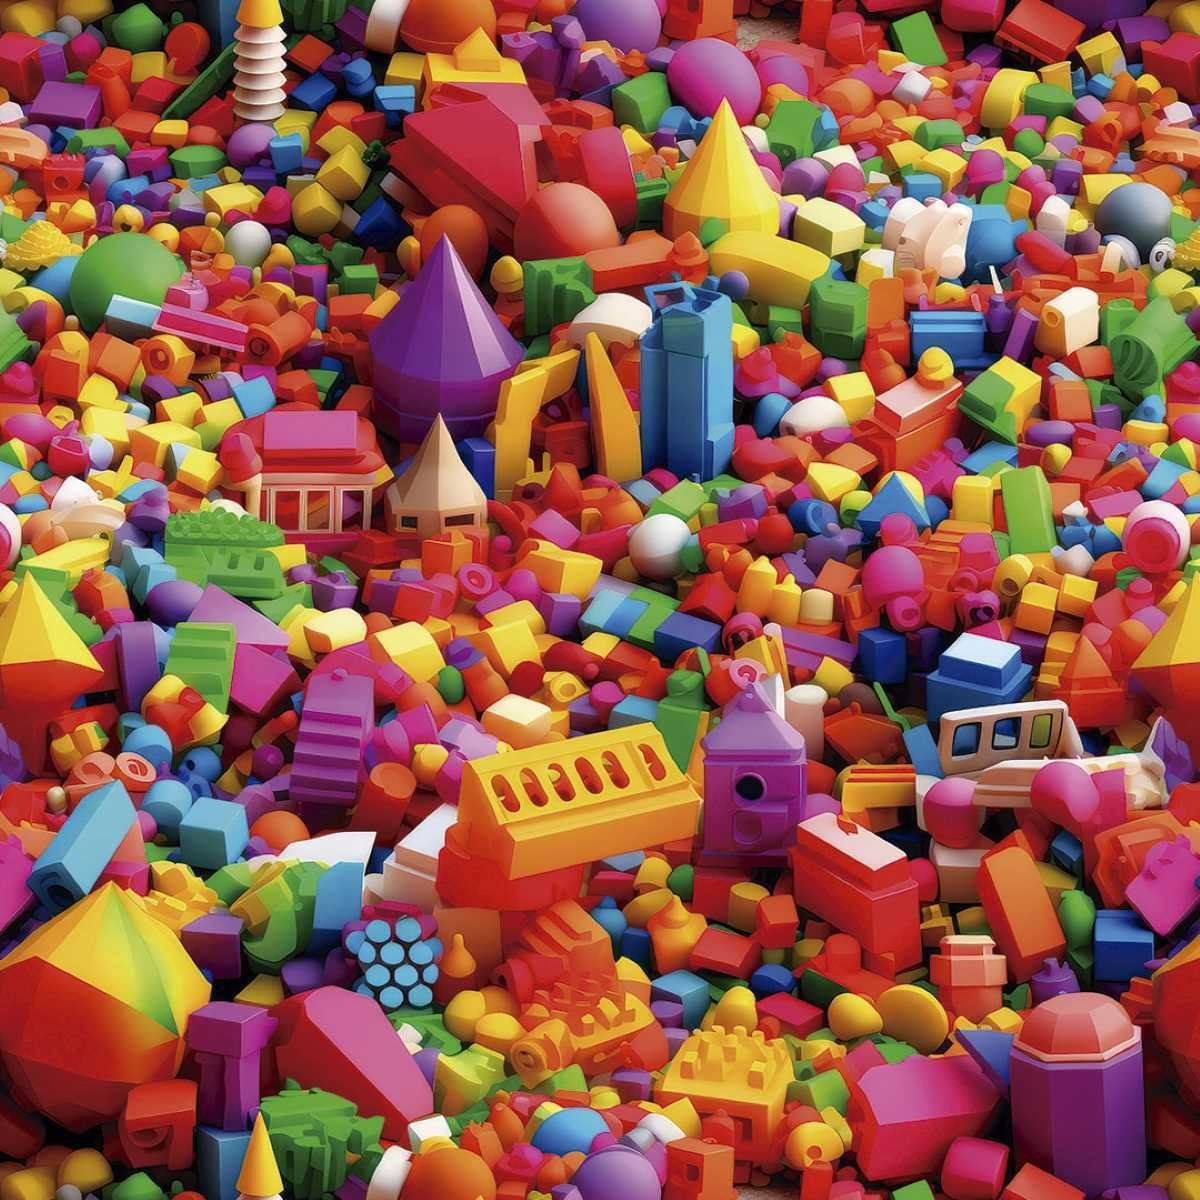 Papel de Parede Auto Colante Quarto Infantil Blocos de Brinquedo Colorido Lavavel Criança 3m